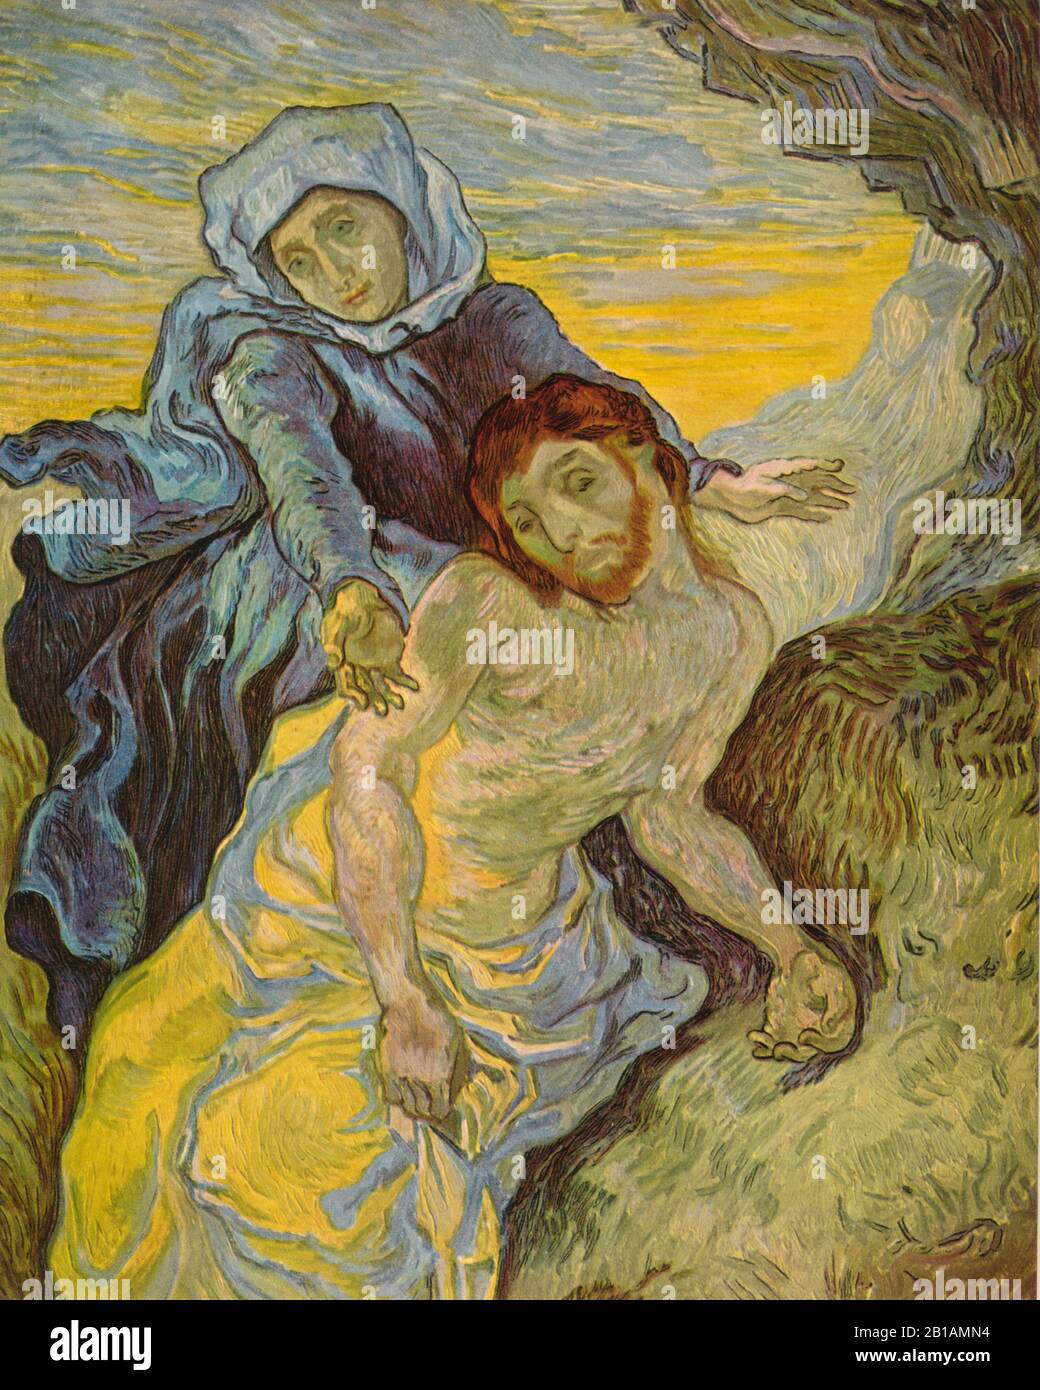 Pieta, Gemälde von Vincent van Gogh, von der Bilddarstellung In Sehr hoher Auflösung und Qualität Stockfoto